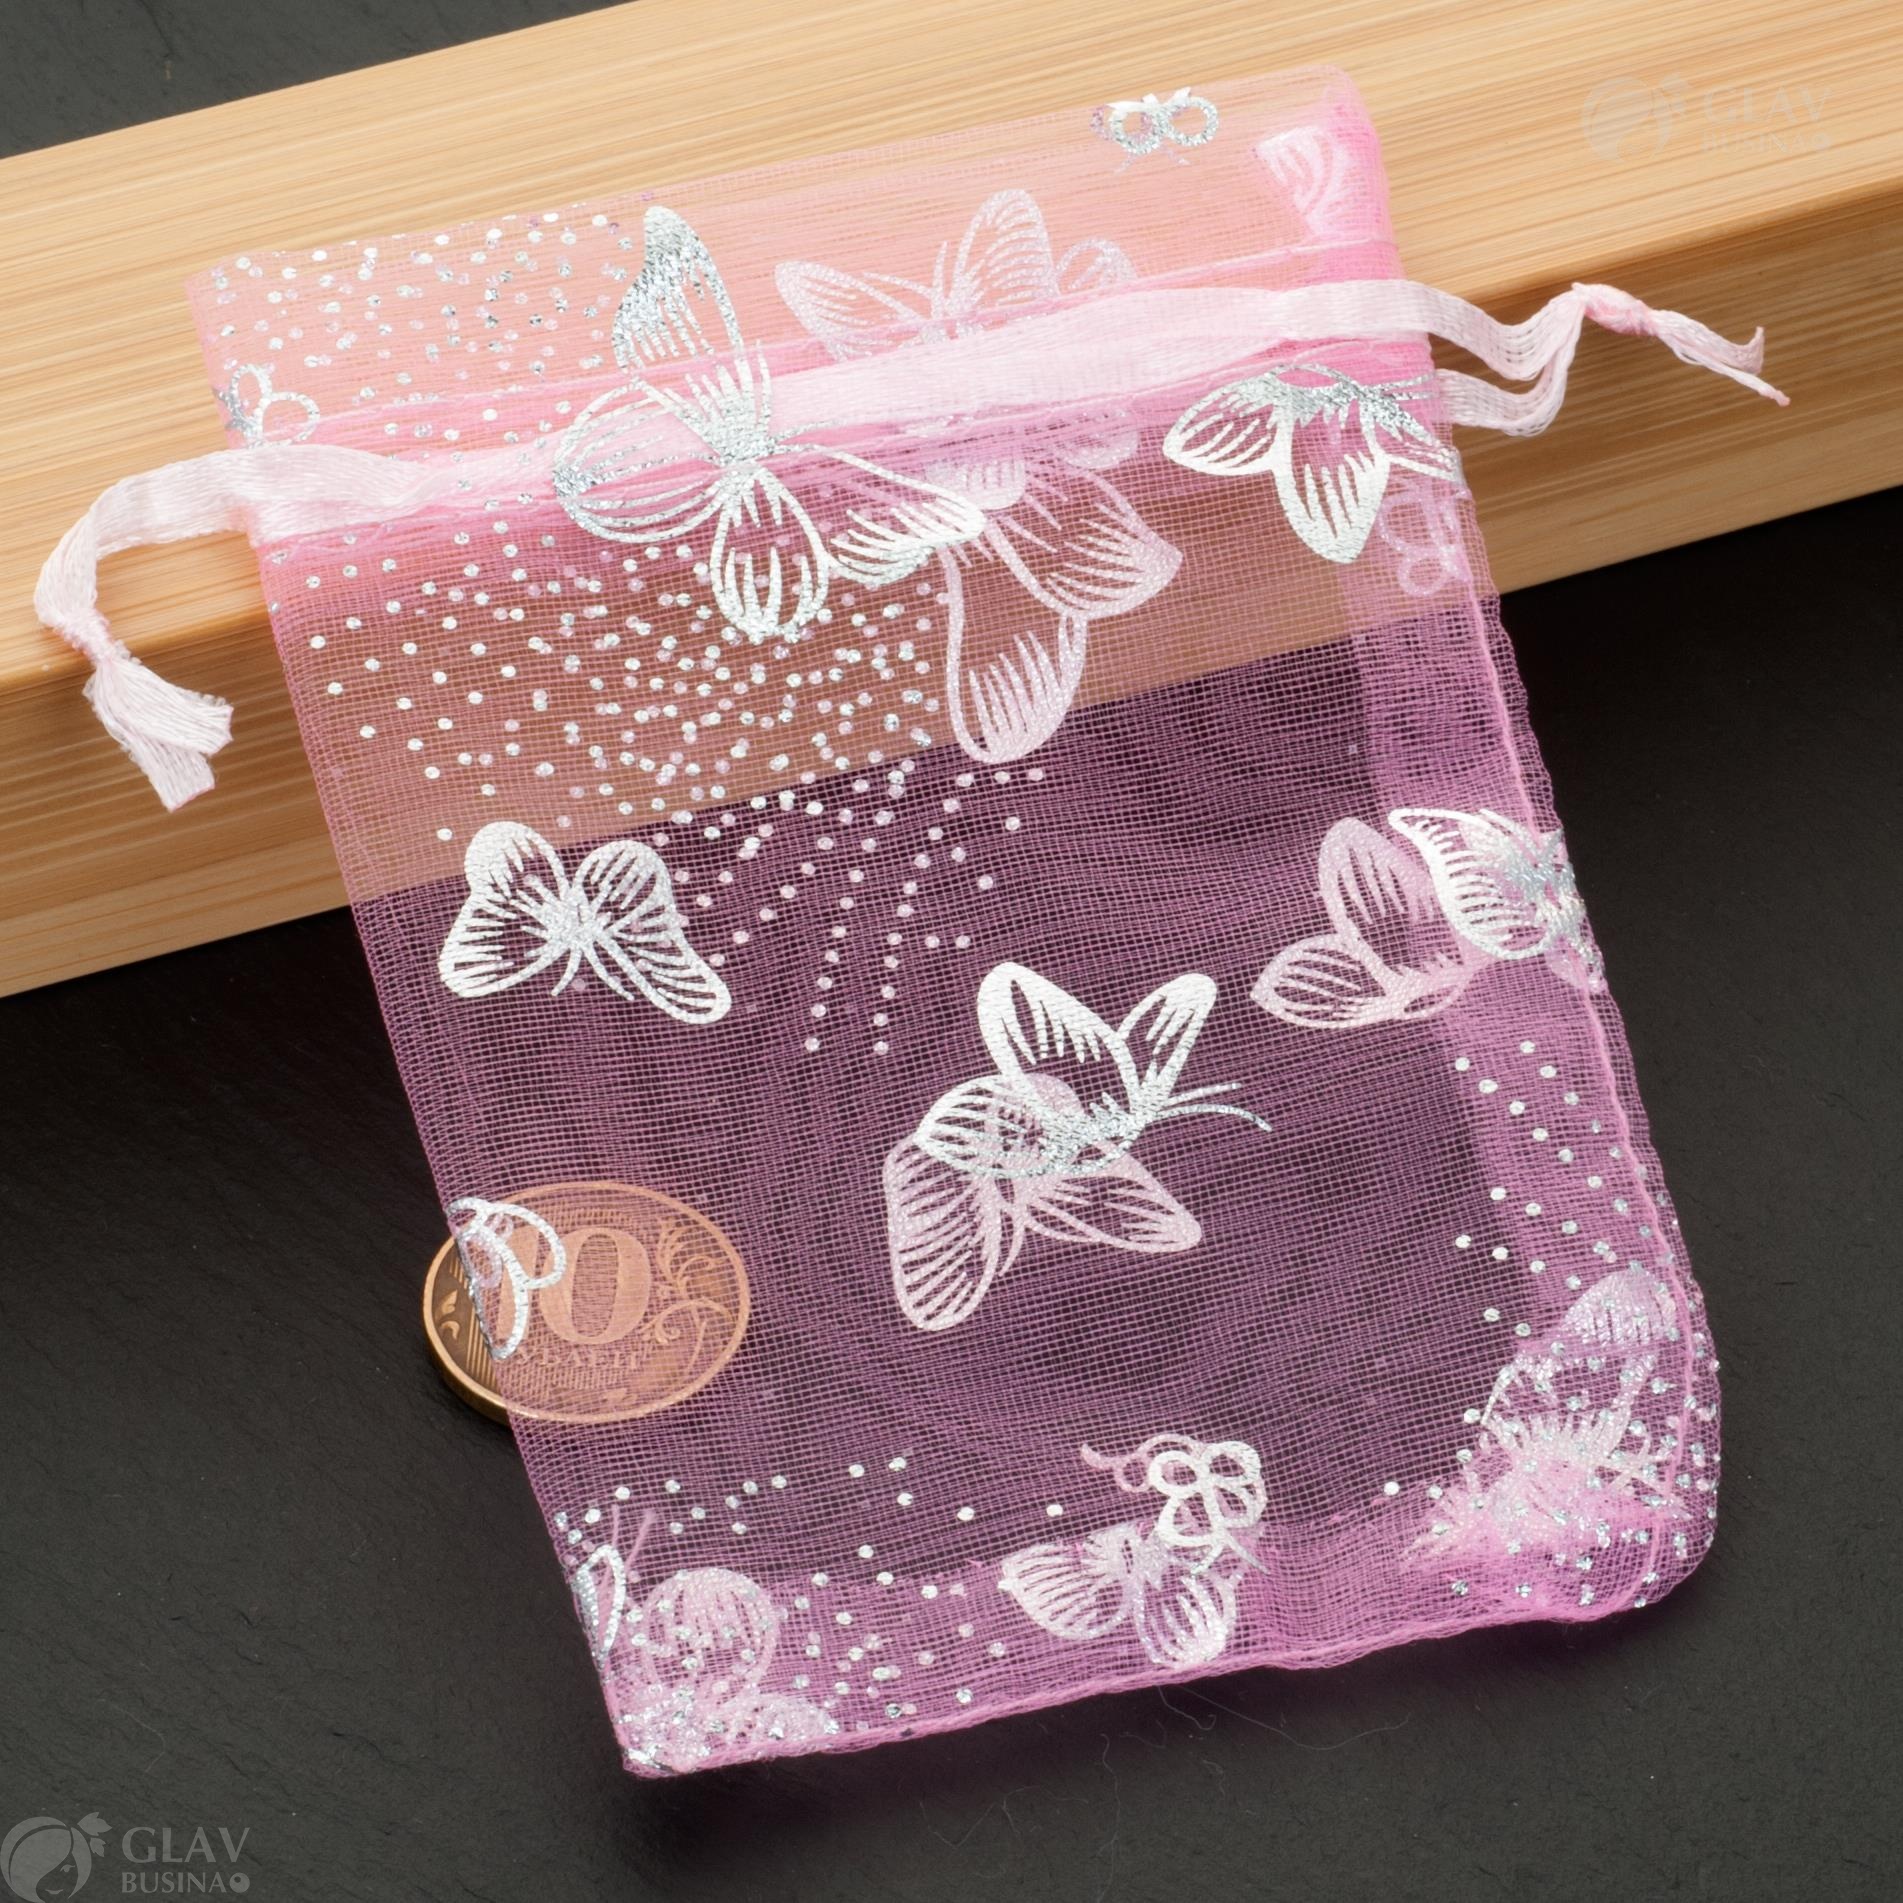 Розовые мешочки из органзы с серебристыми бабочками, размер 8х11 см, для упаковки подарков или украшений.